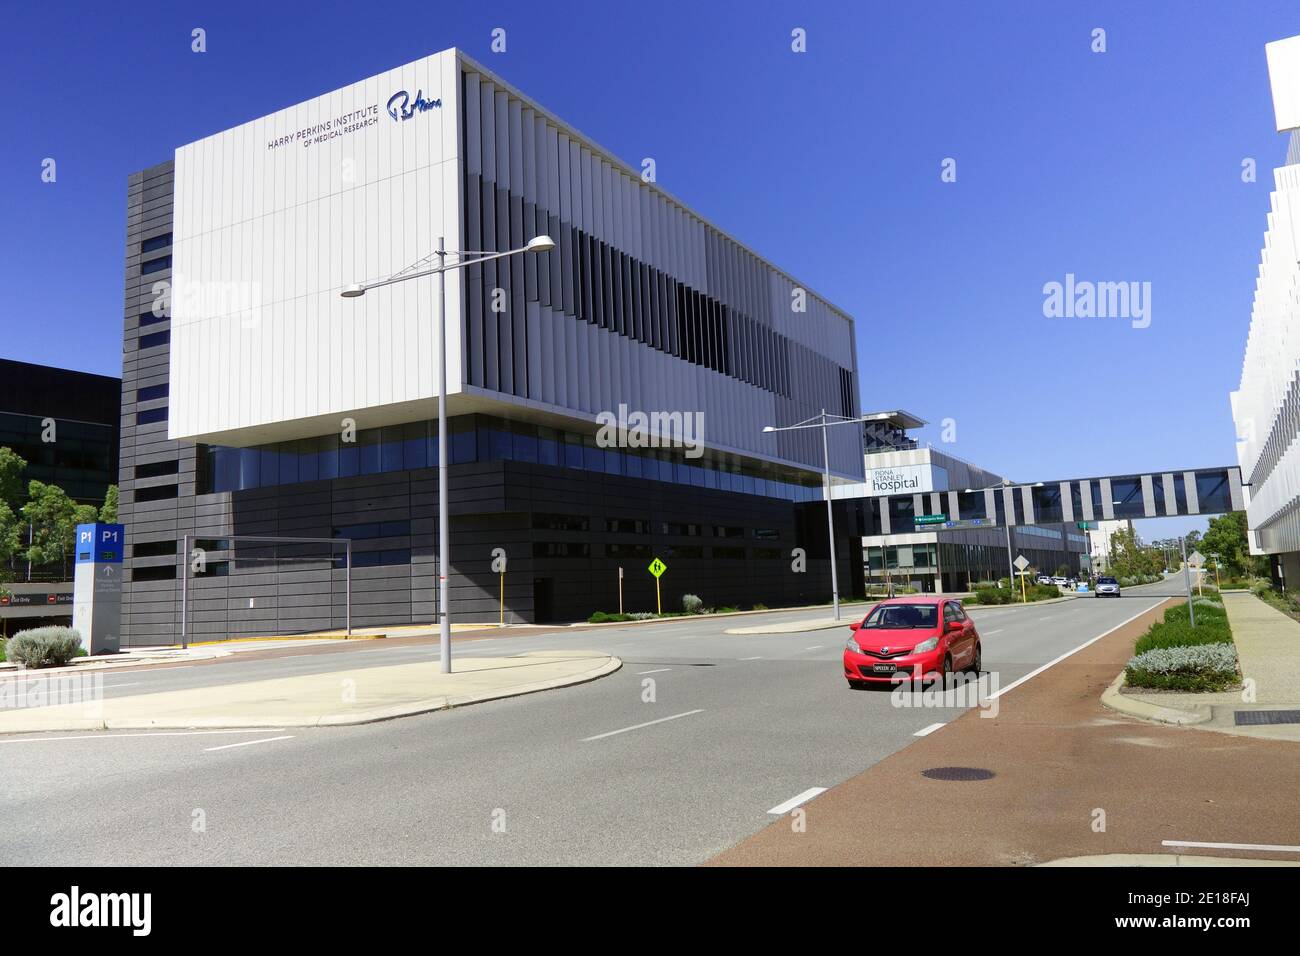 Harry Perkins Institute of Medical Research au quartier de l'hôpital Fiona Stanley à Murdoch, Perth, Australie occidentale. Pas de PR Banque D'Images